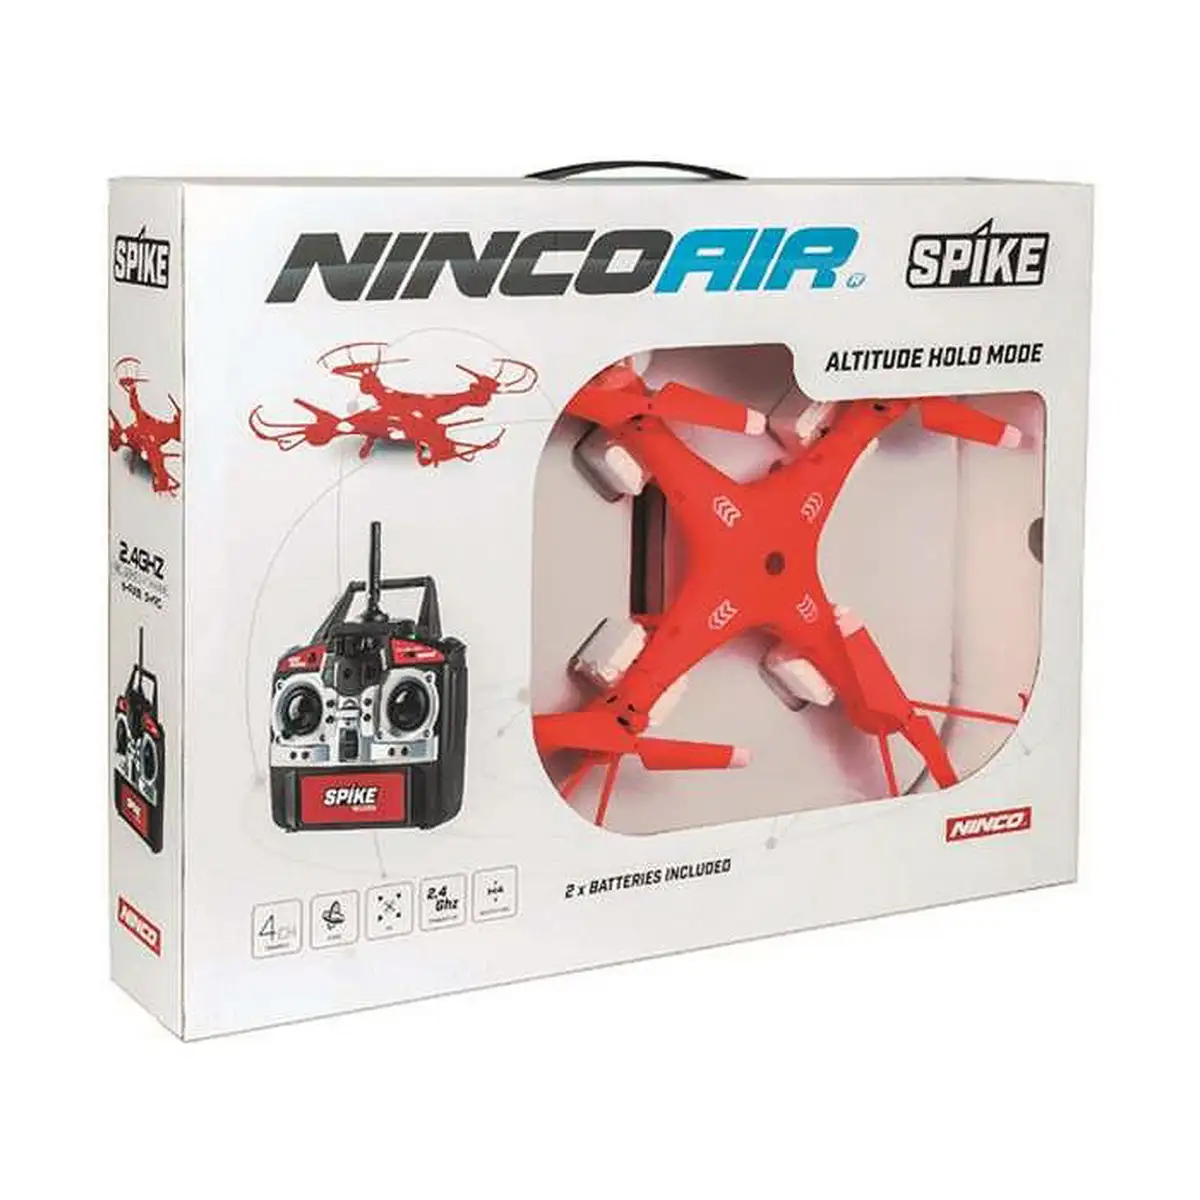 Drone ninco ninko air spike telecommandee_4418. DIAYTAR SENEGAL - Là où Chaque Produit est une Trouvaille Unique. Découvrez notre boutique en ligne et trouvez des articles qui vous distinguent par leur originalité.